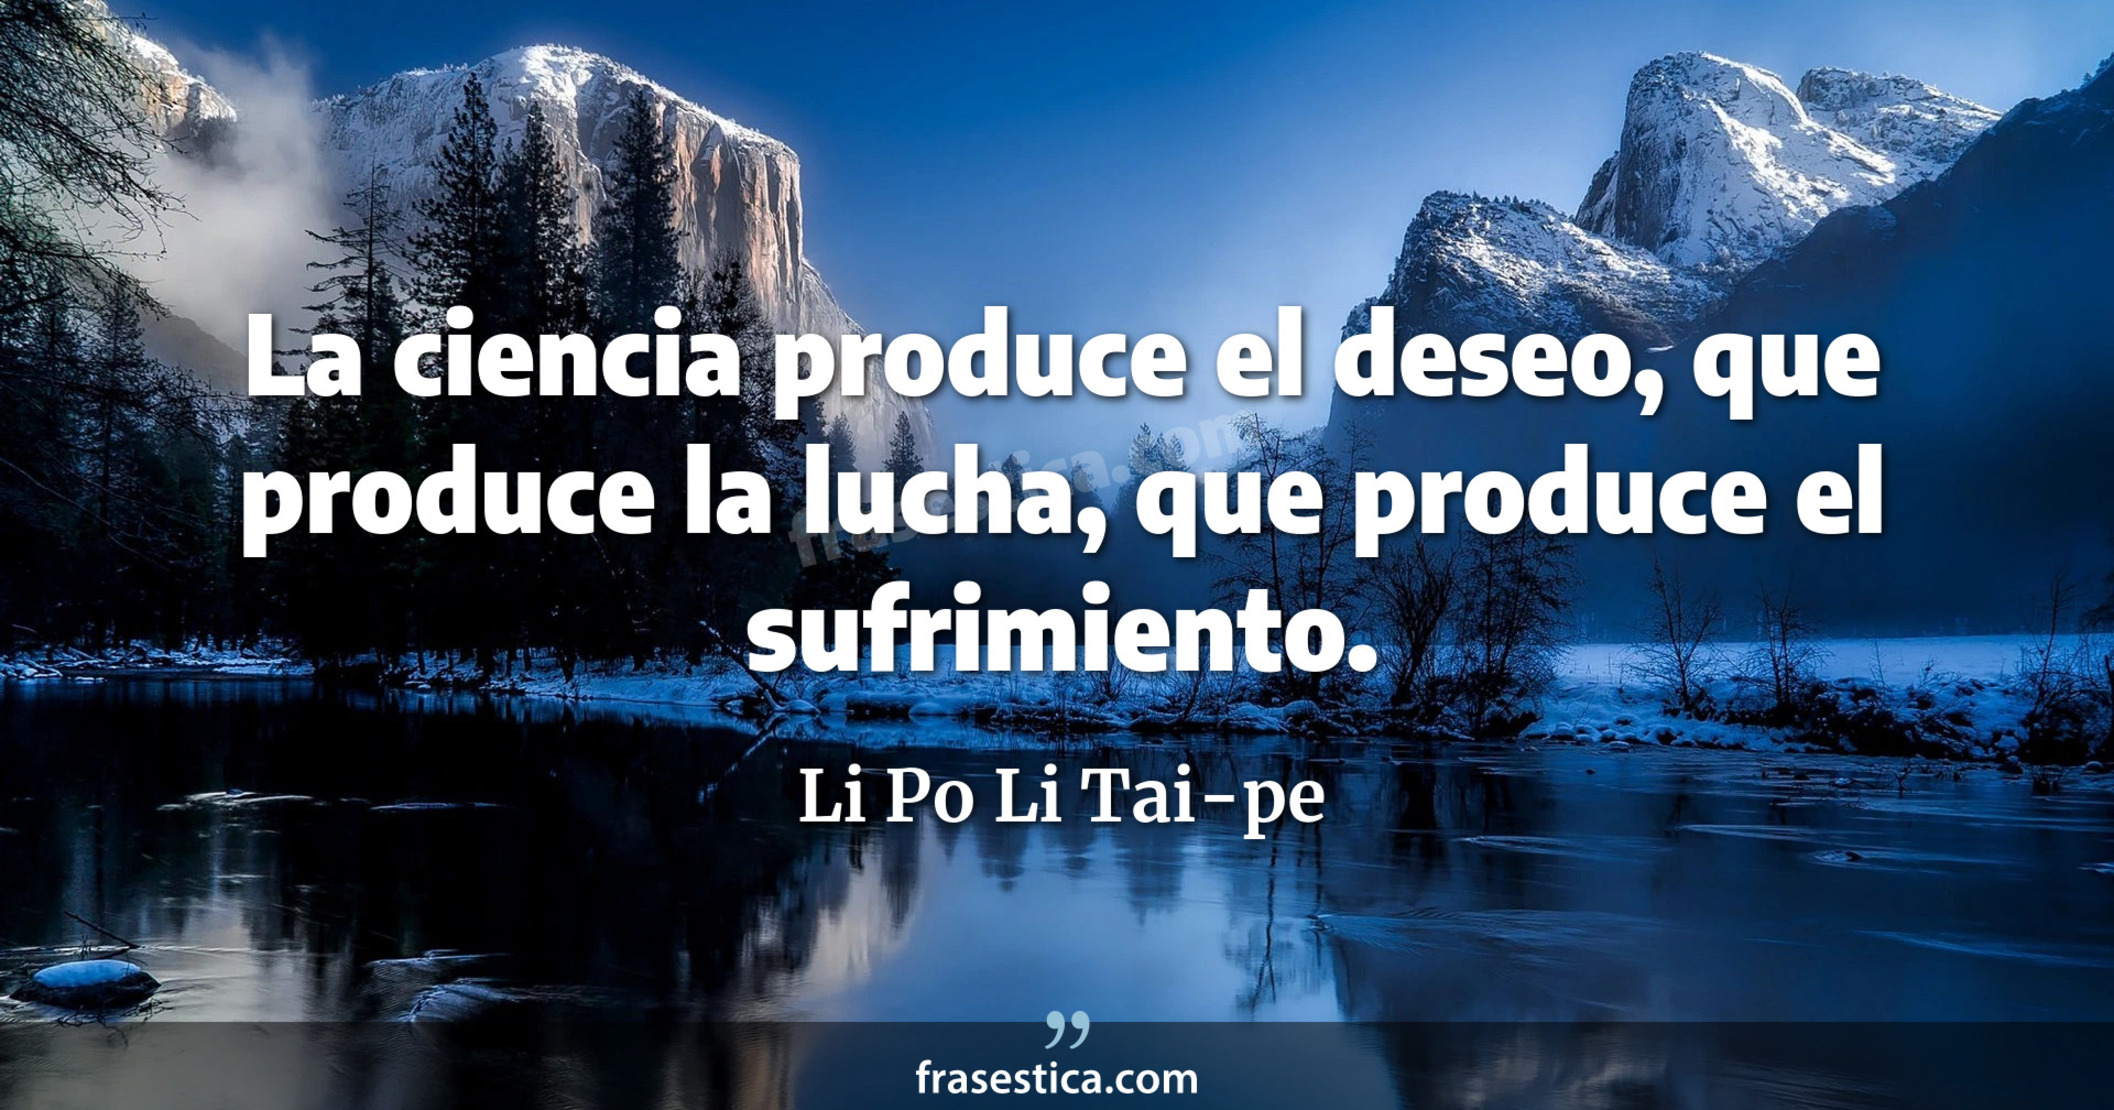 La ciencia produce el deseo, que produce la lucha, que produce el sufrimiento. - Li Po Li Tai-pe